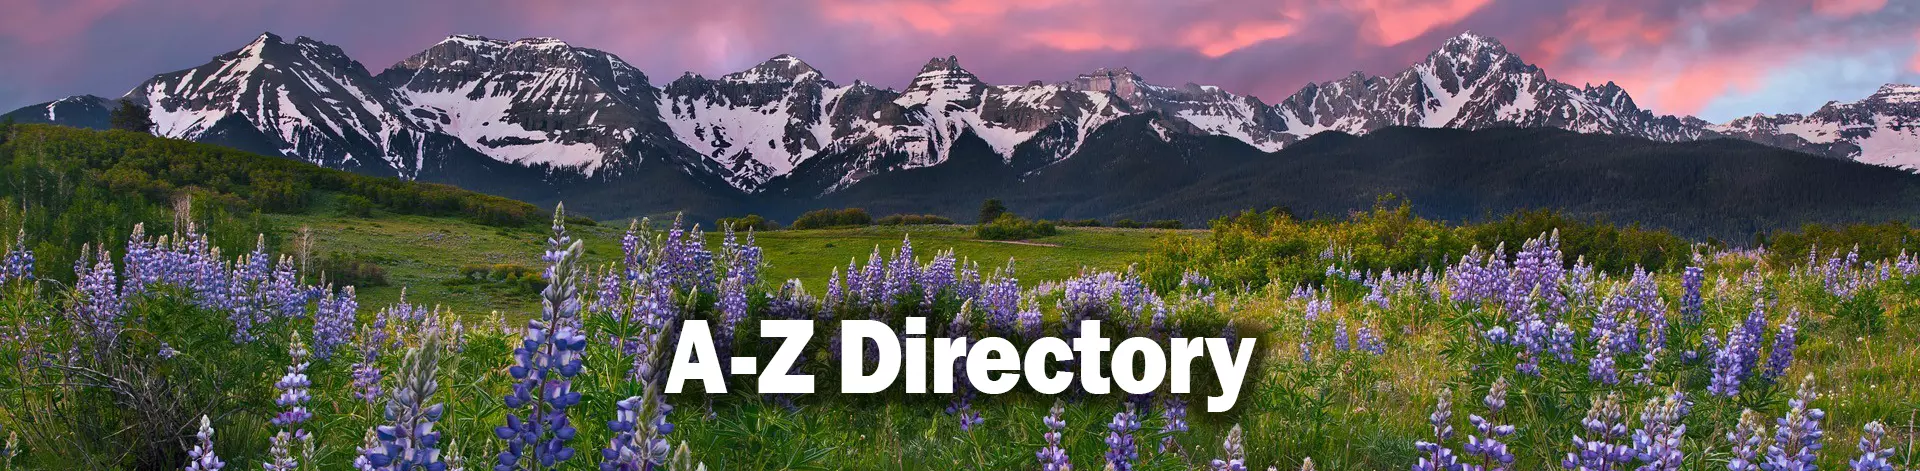 景观的科罗拉多山脉的紫丁香。单词- Z目录是一个覆盖在草地上。